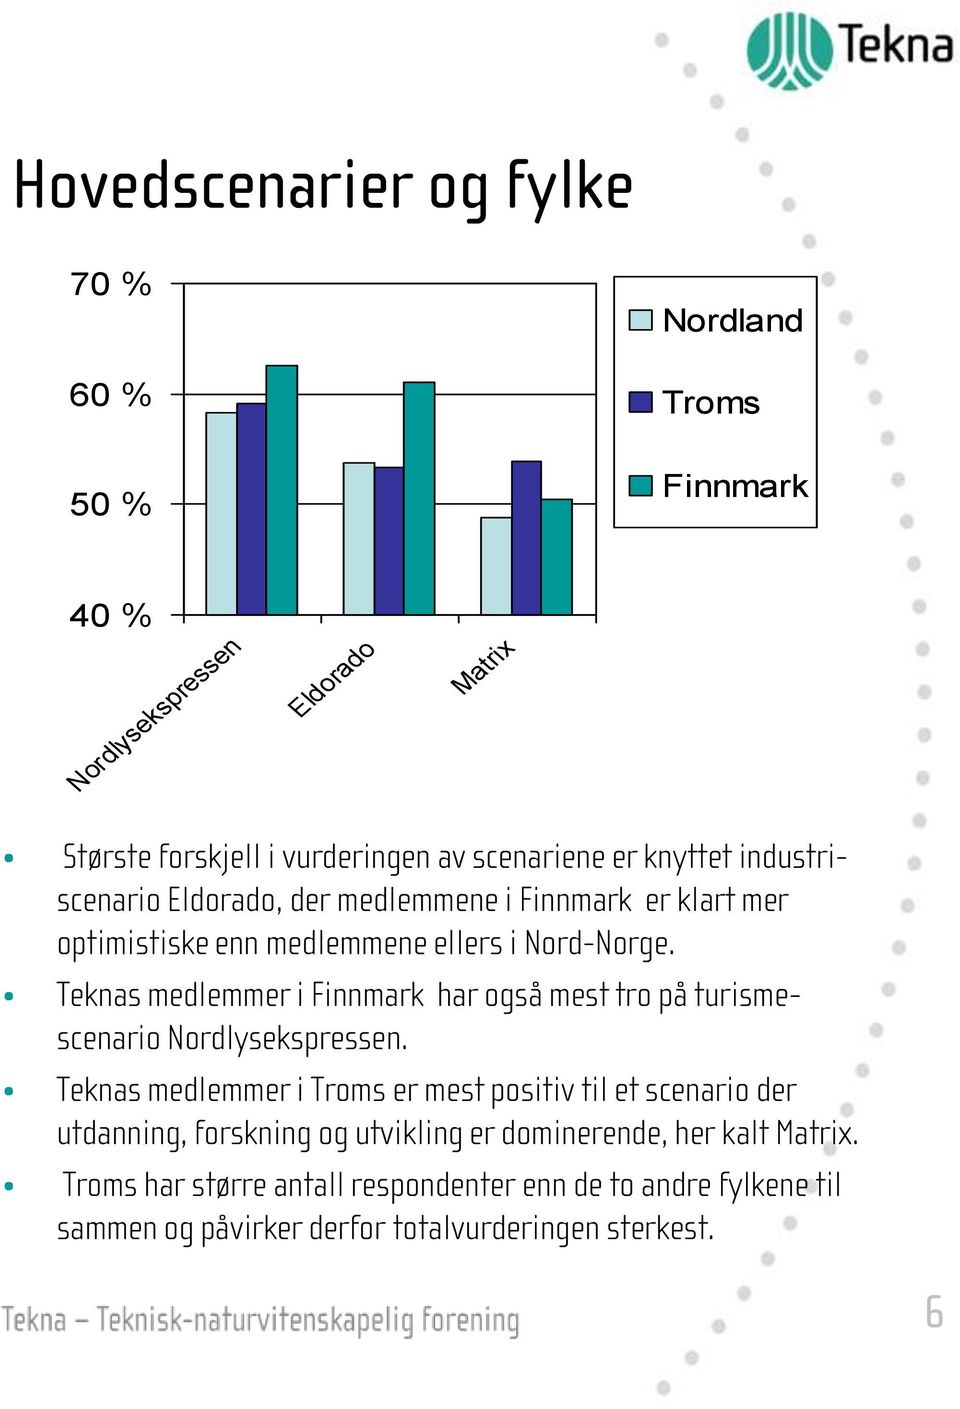 Teknas medlemmer i Finnmark har også mest tro på turismescenario Nordlysekspressen.